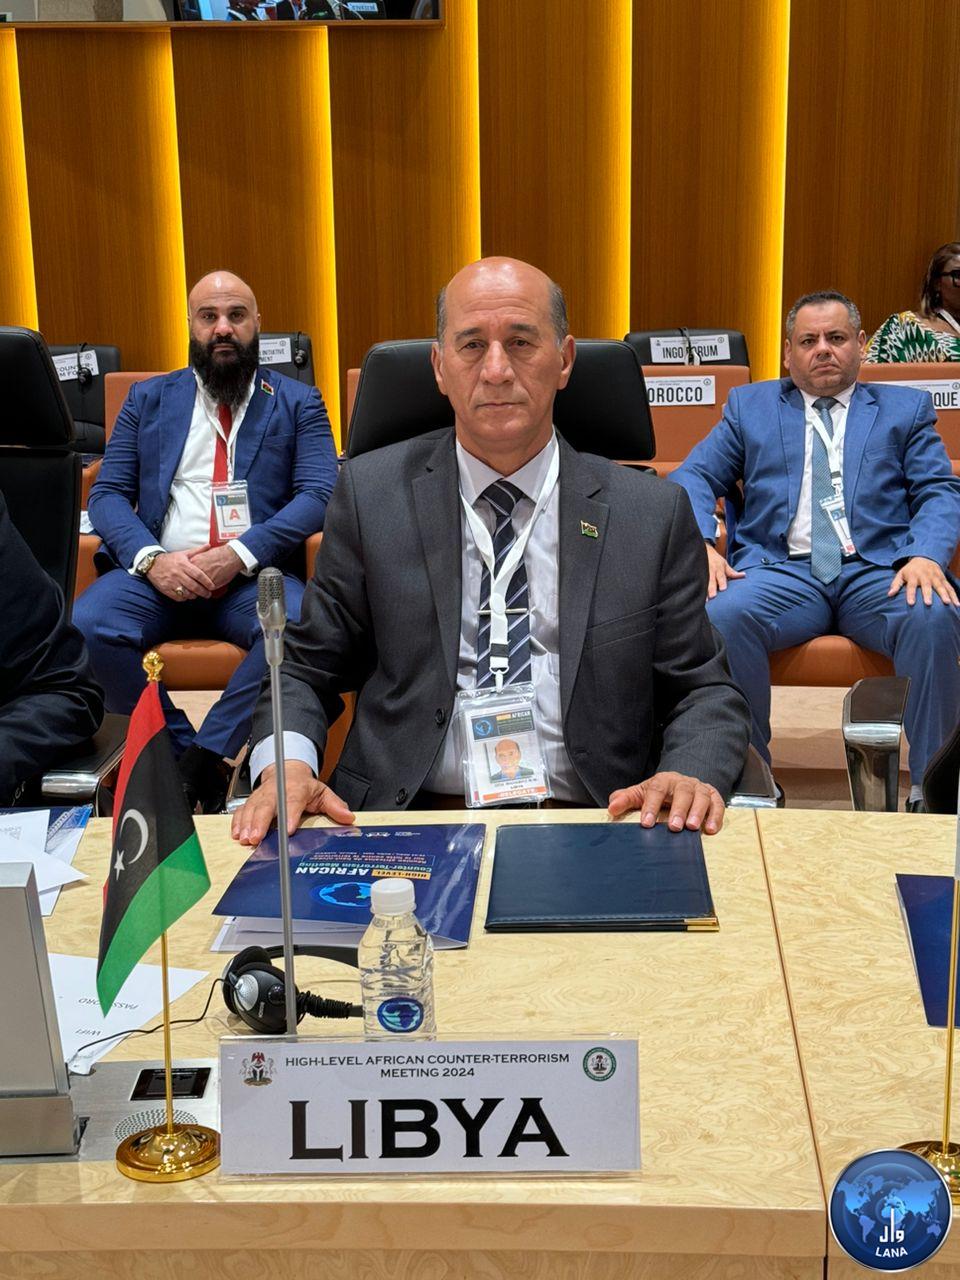 الوفد الليبي في اجتماع أبوجا لمكافحة الارهاب في أفريقيا : ليبيا نجحت في القضاء علي الجماعات الإرهابية .